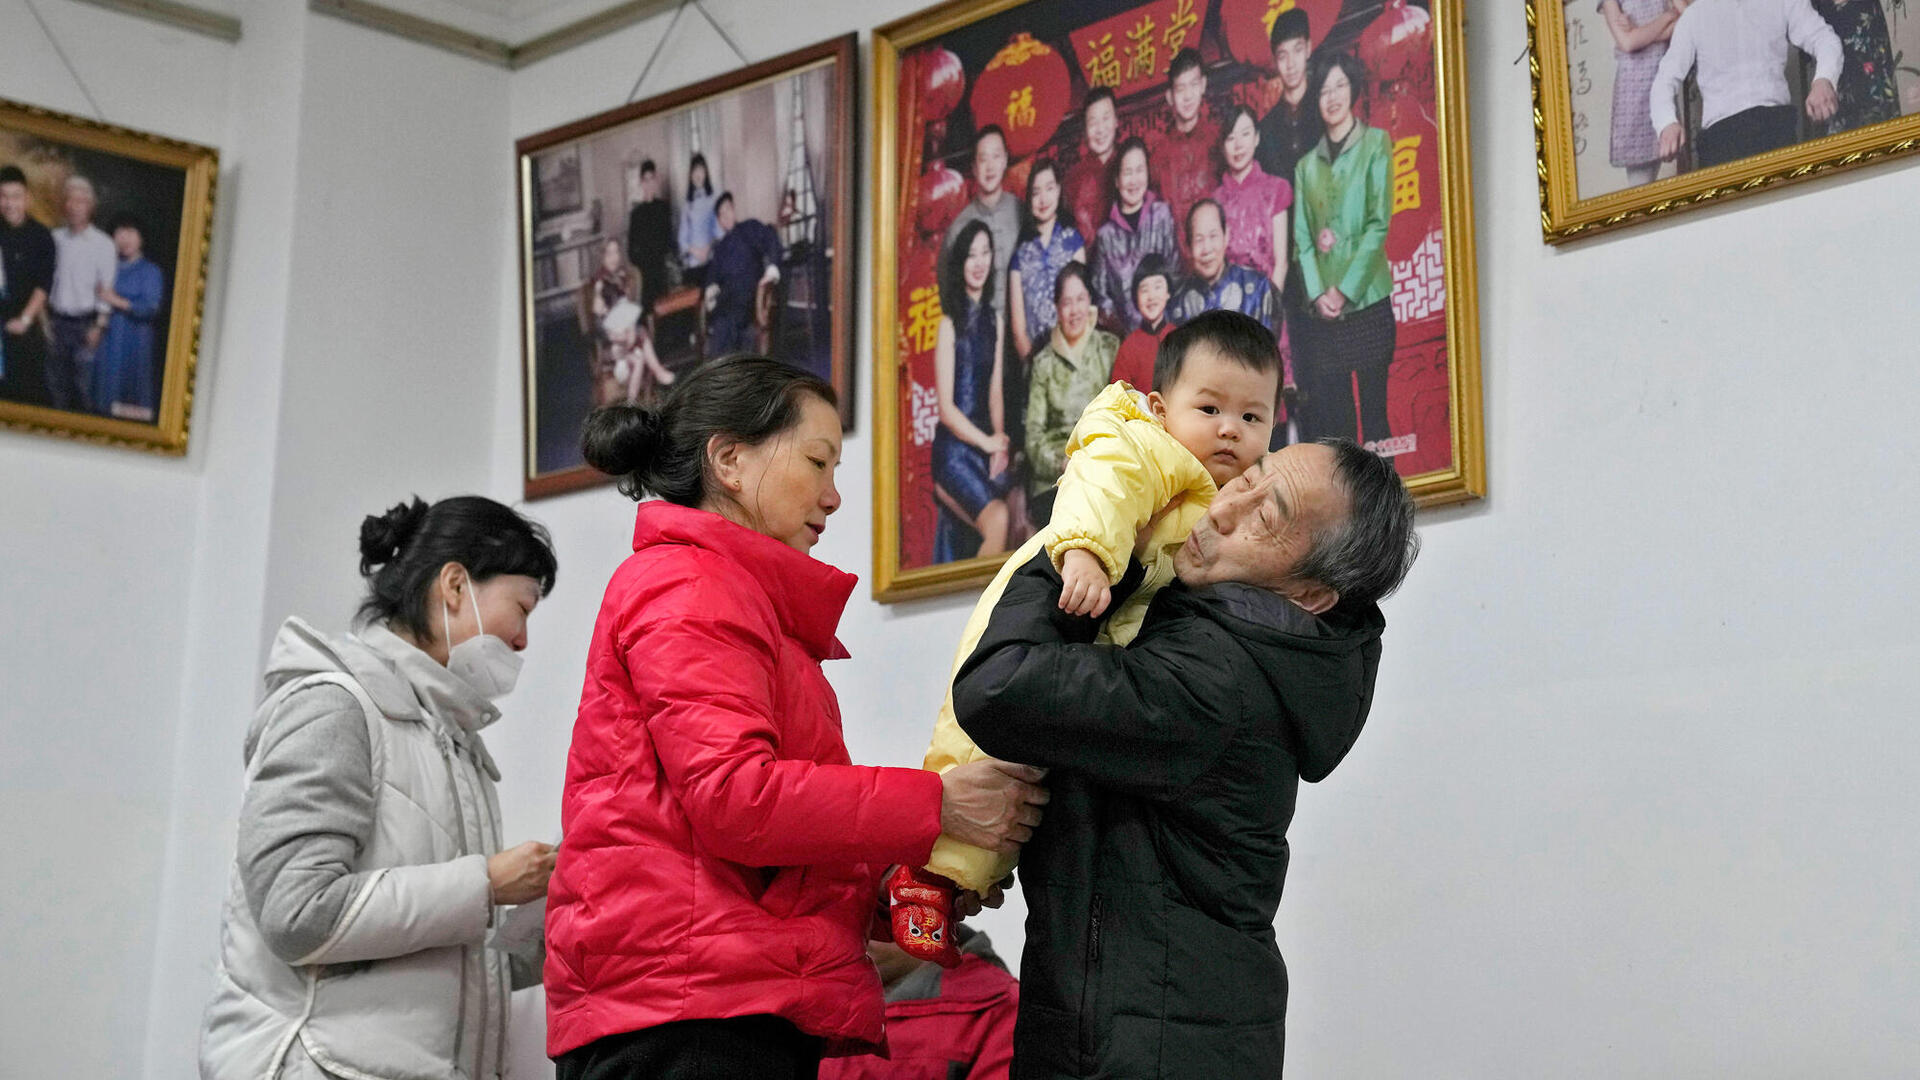 משפחה סינית נערכת לצילום משפחתי